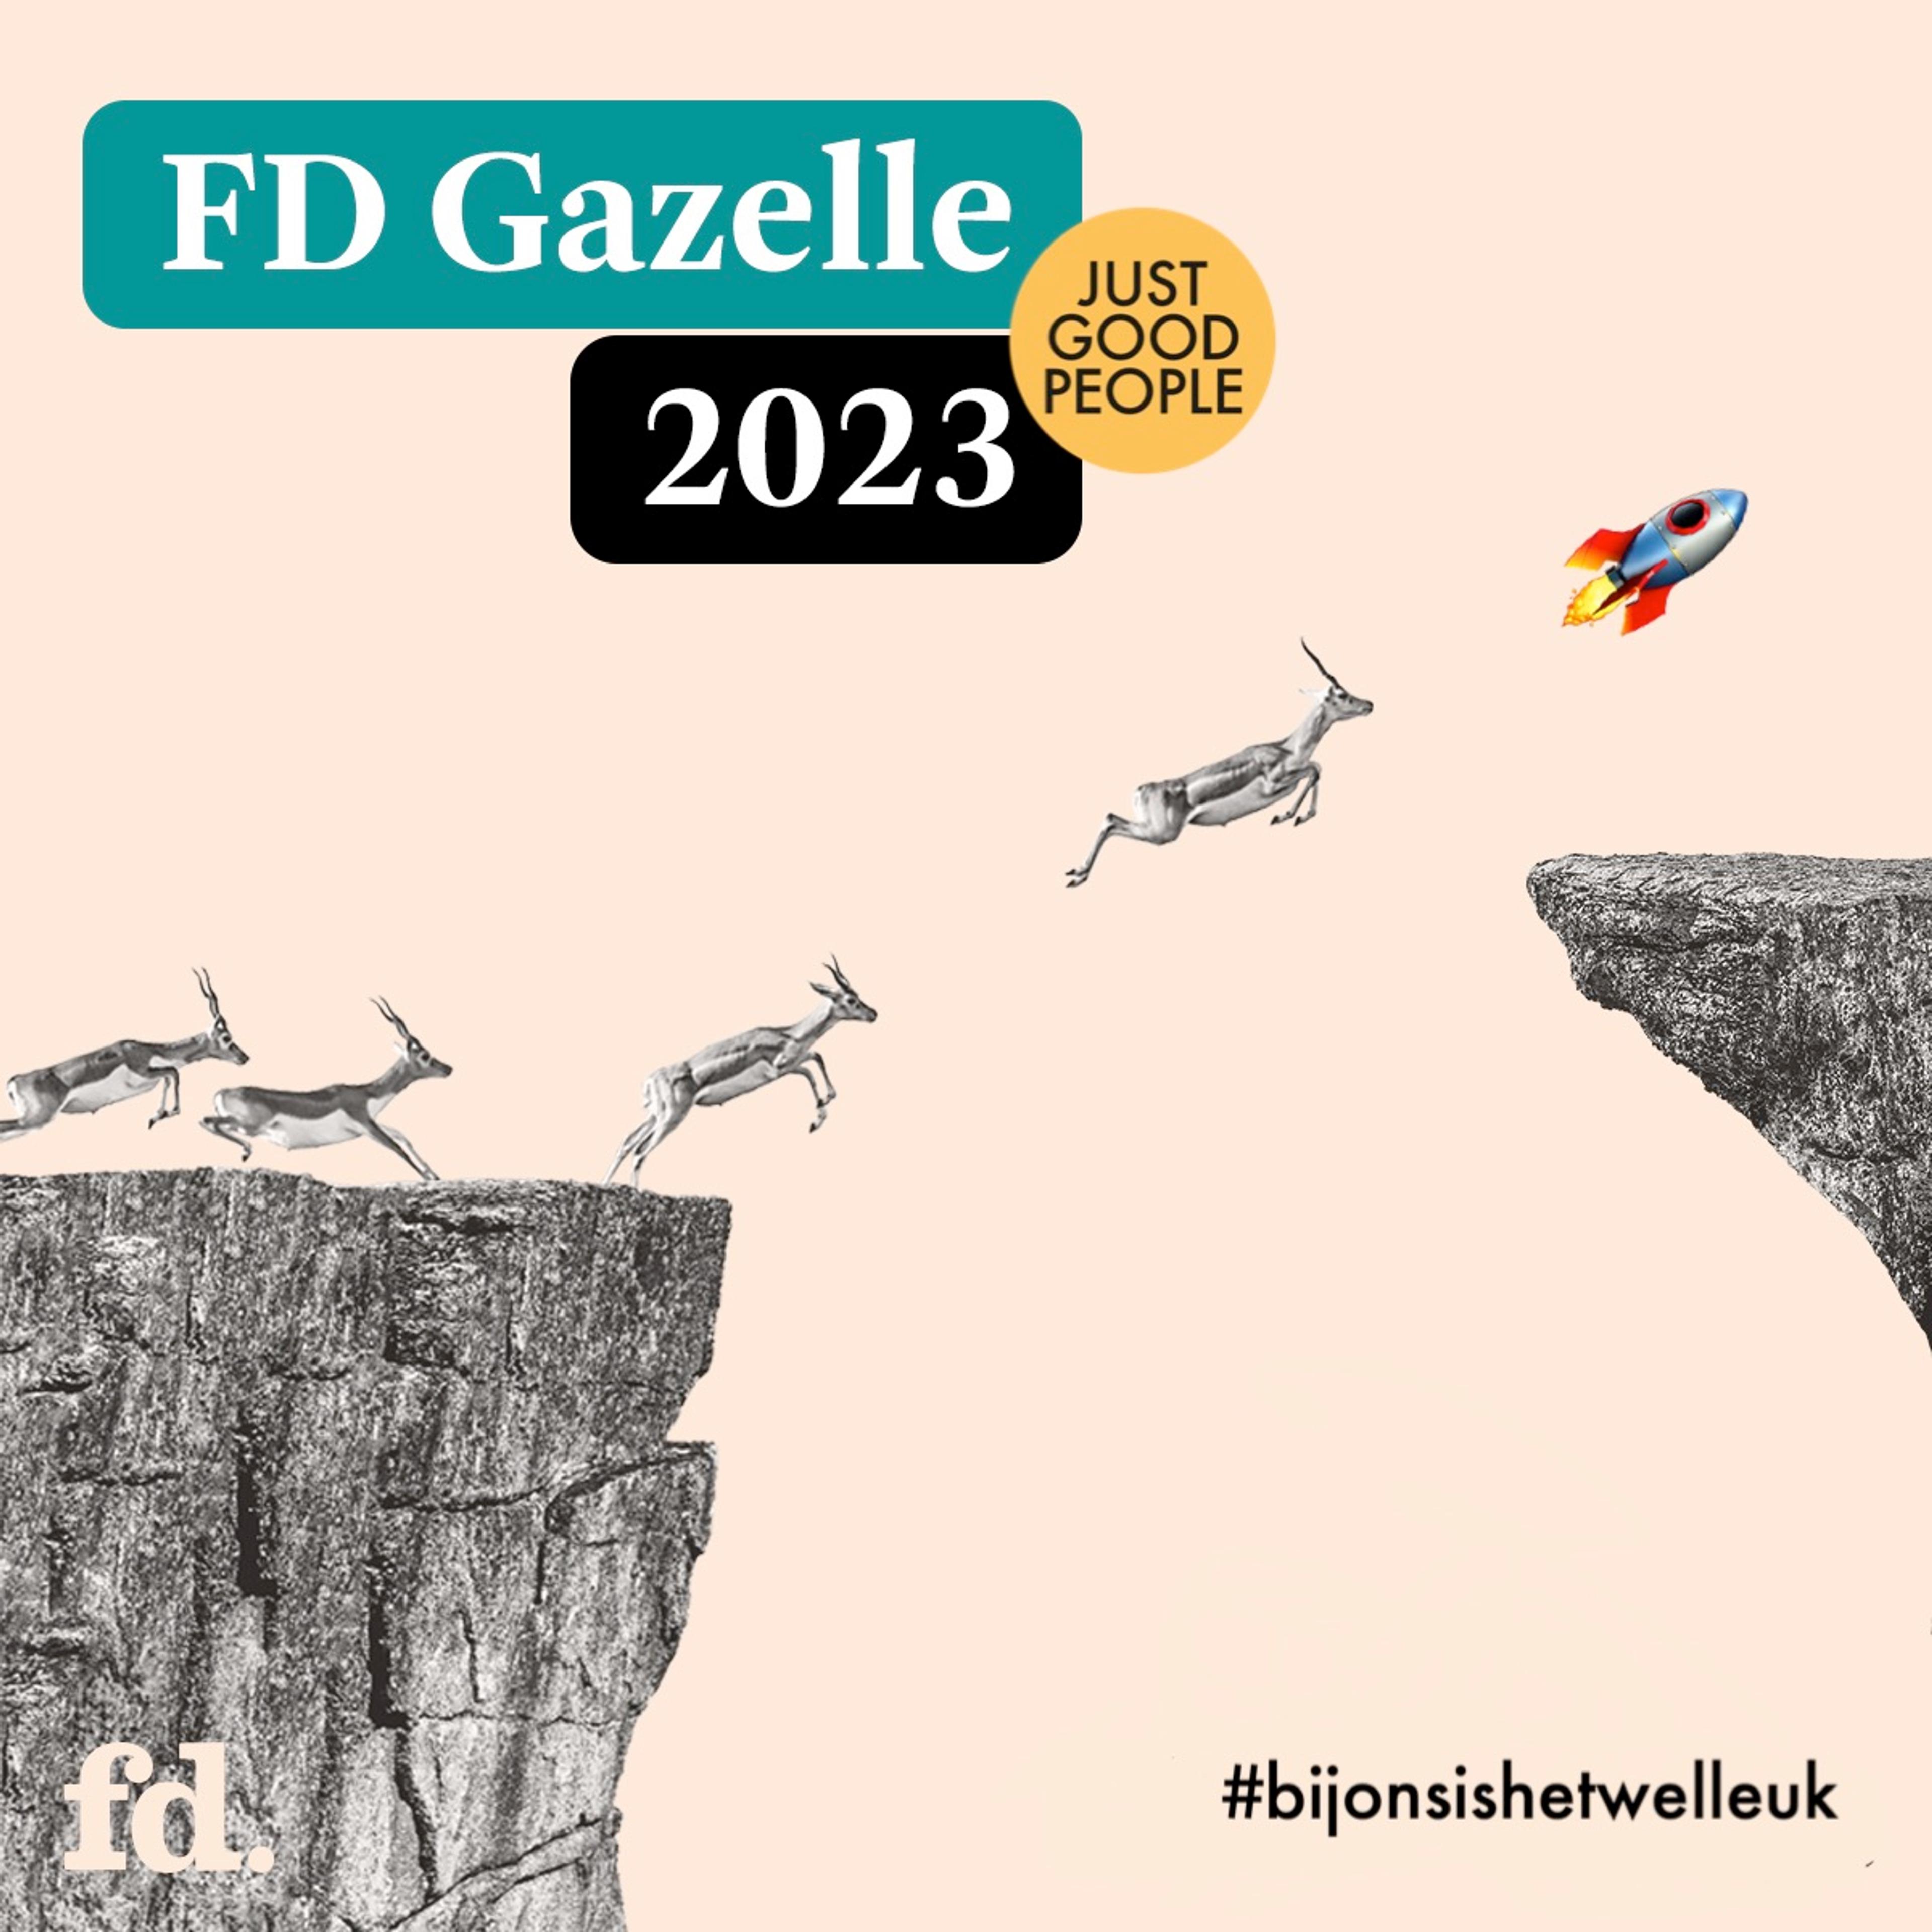 Just Good People is FD Gazelle 2023!